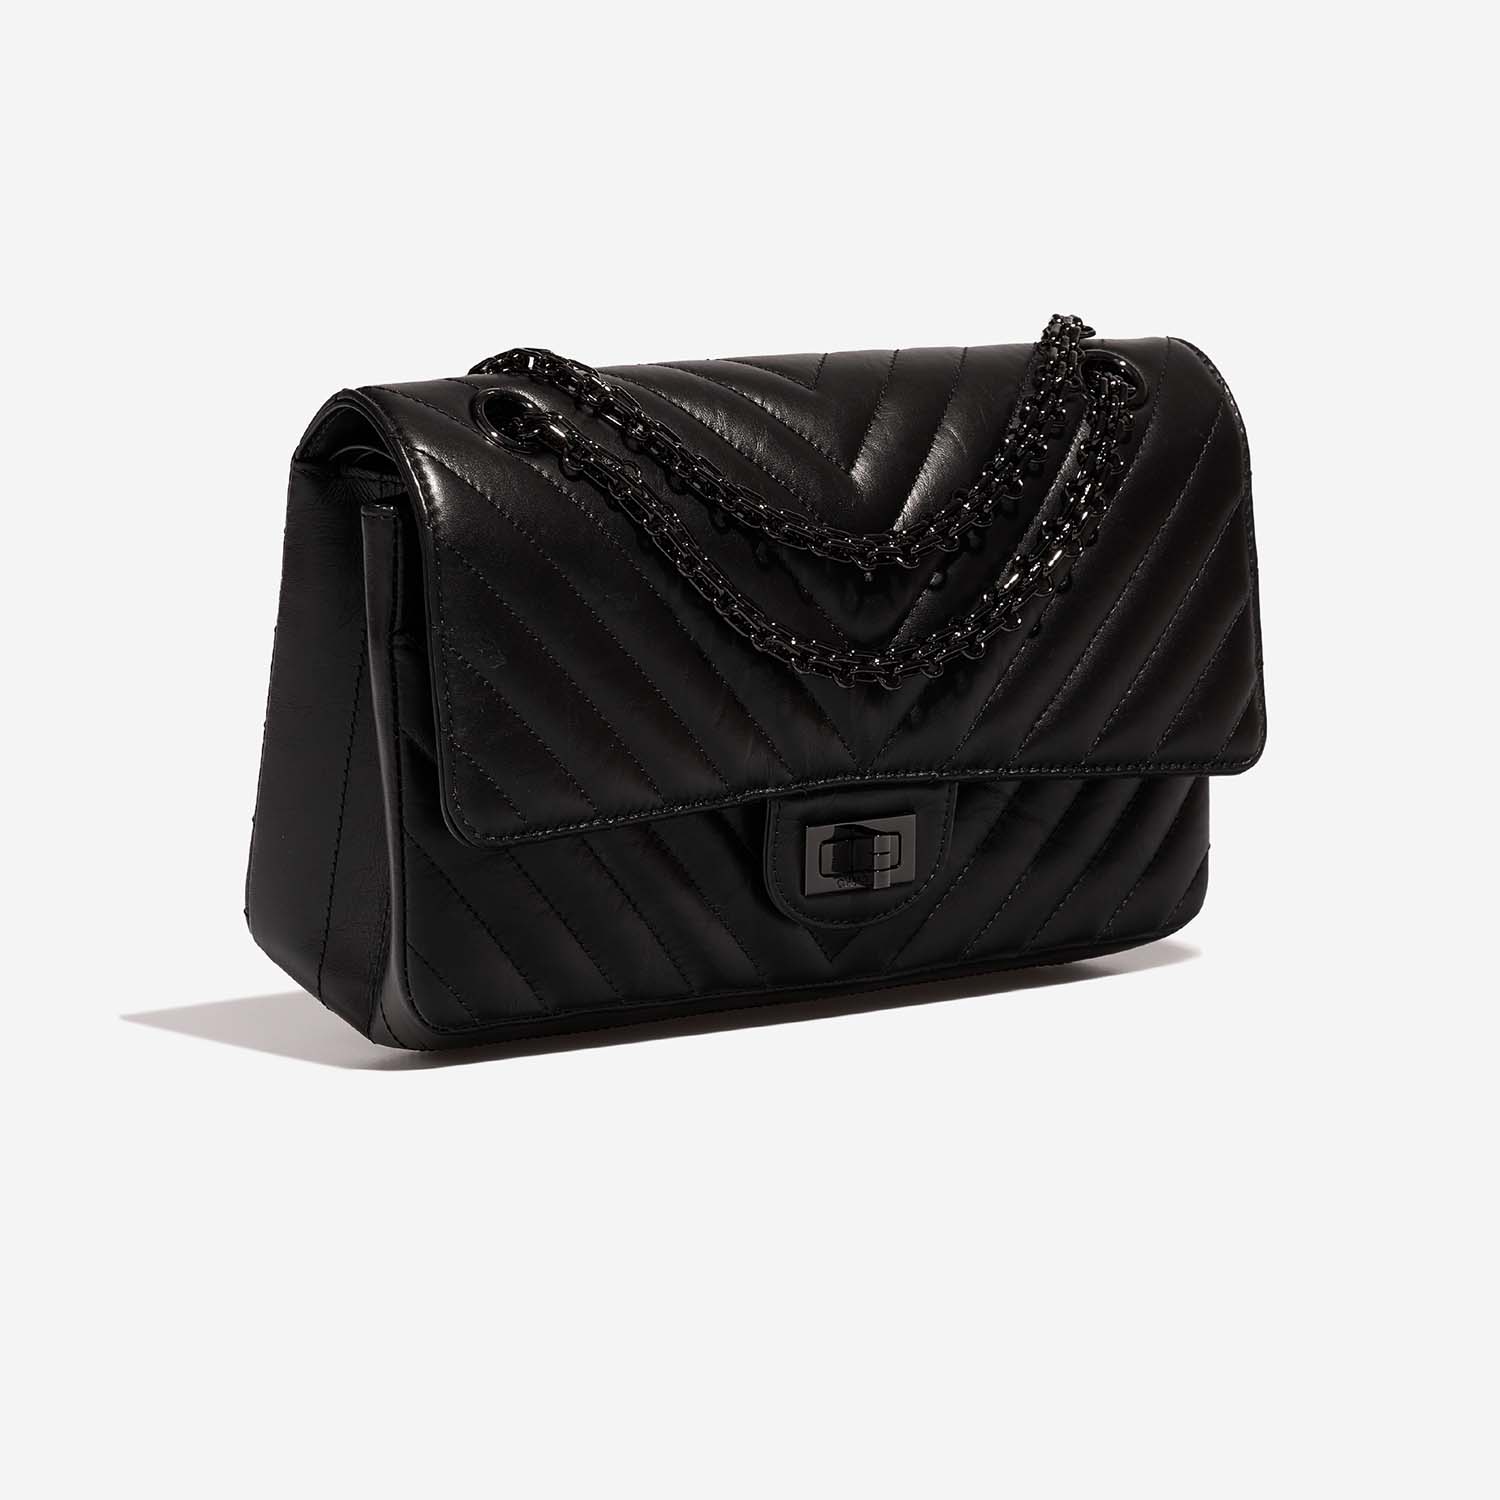 Chanel 255Reissue 225 Black Side Front | Verkaufen Sie Ihre Designer-Tasche auf Saclab.com